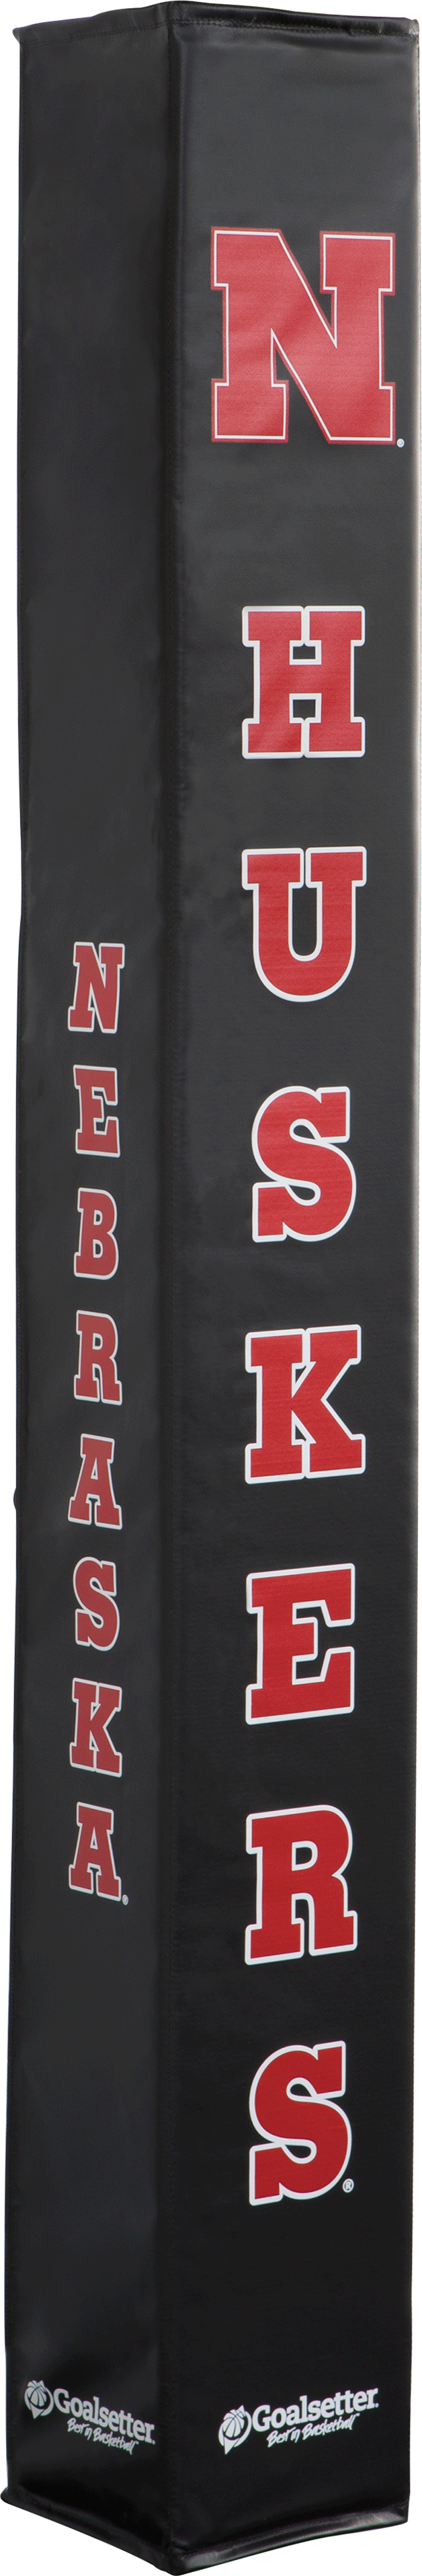 Goalsetter Basketball - Collegiate Basketball Pole Pad - Nebraska Basketball Cornhuskers (Black)